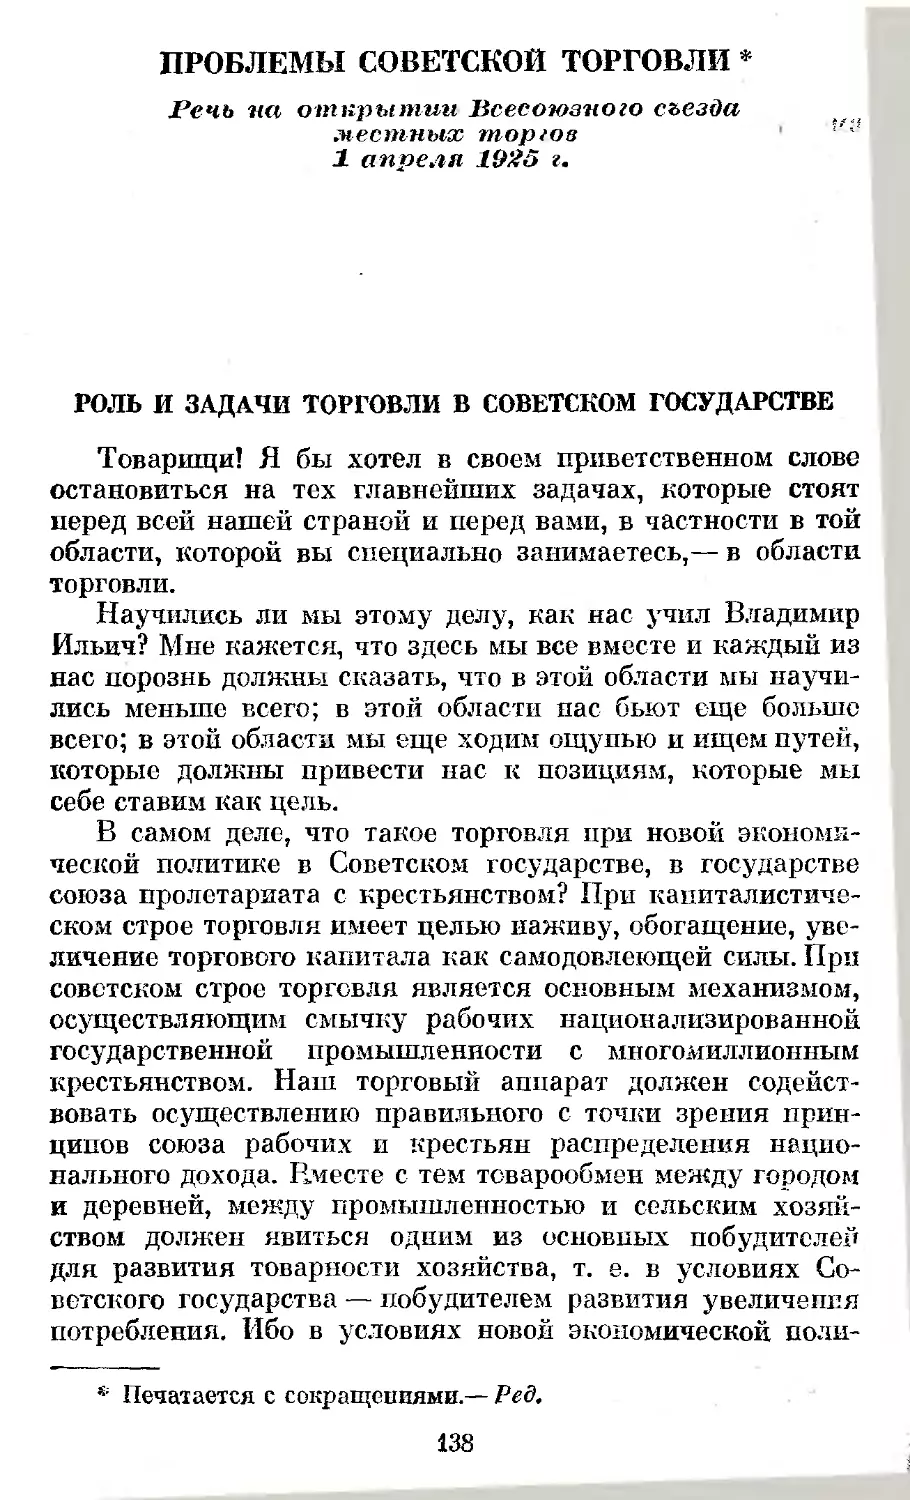 Проблемы советской торговли. Речь на открытии Всесоюзного съезда местных торгов 1 апреля 1925 г